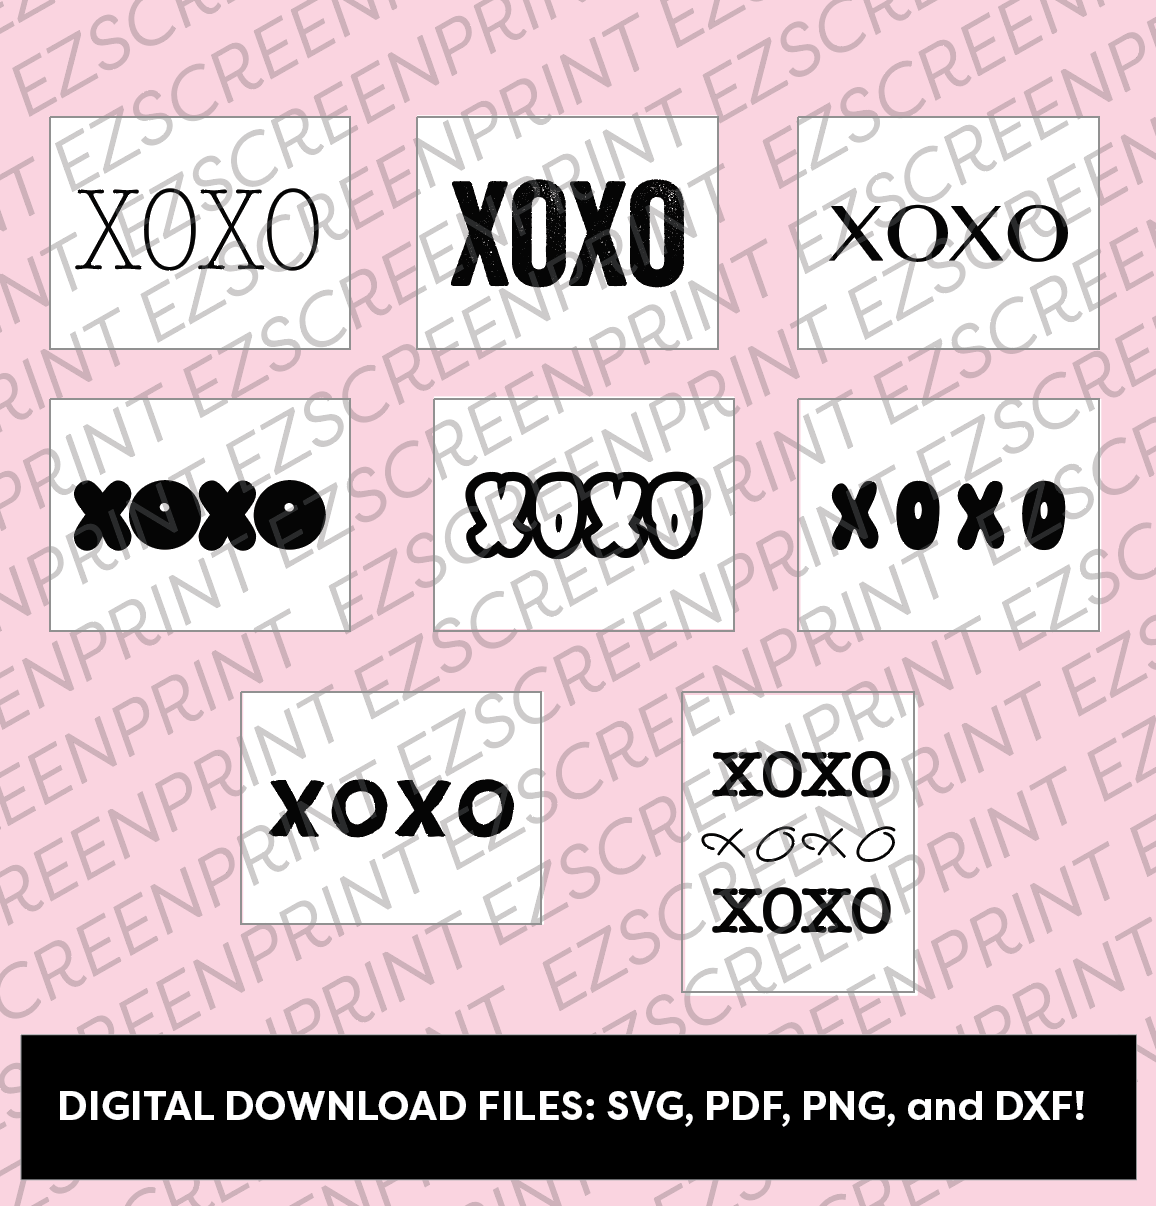 XOXO Digital Download Pack